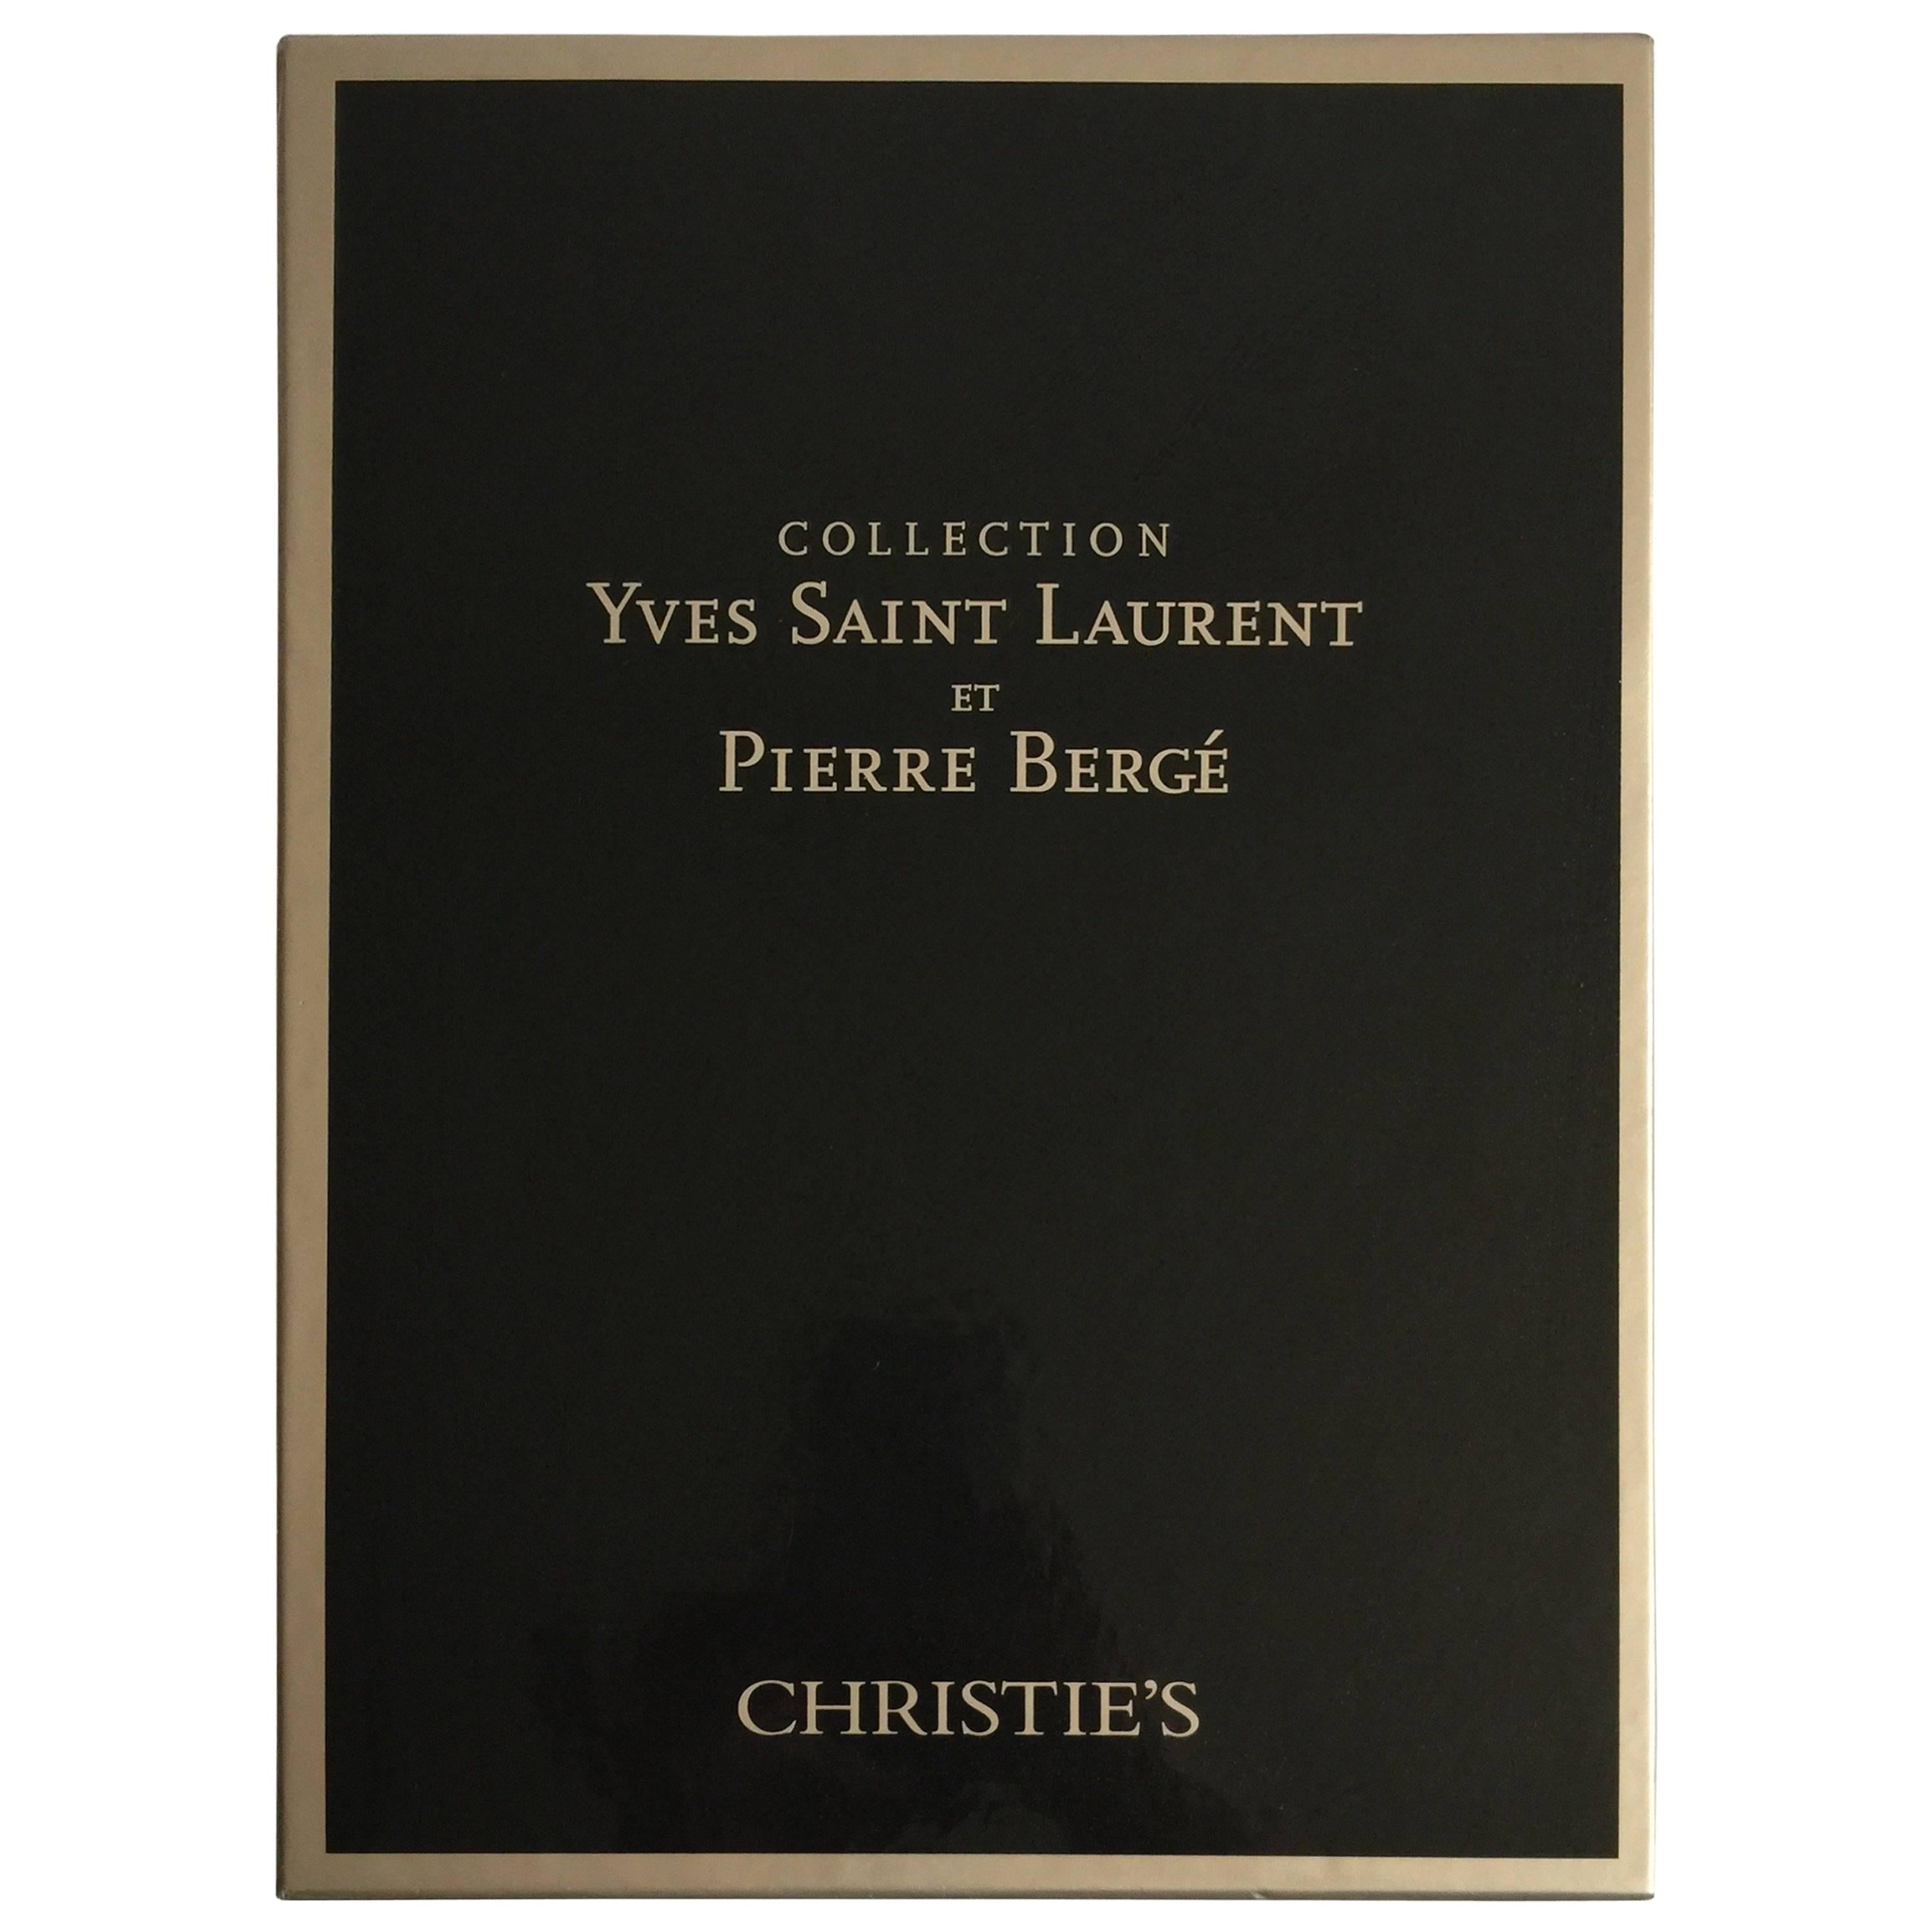 Complete Catalog Set of Yves Saint Laurent & Pierre Bergé Auction at Christie's For Sale